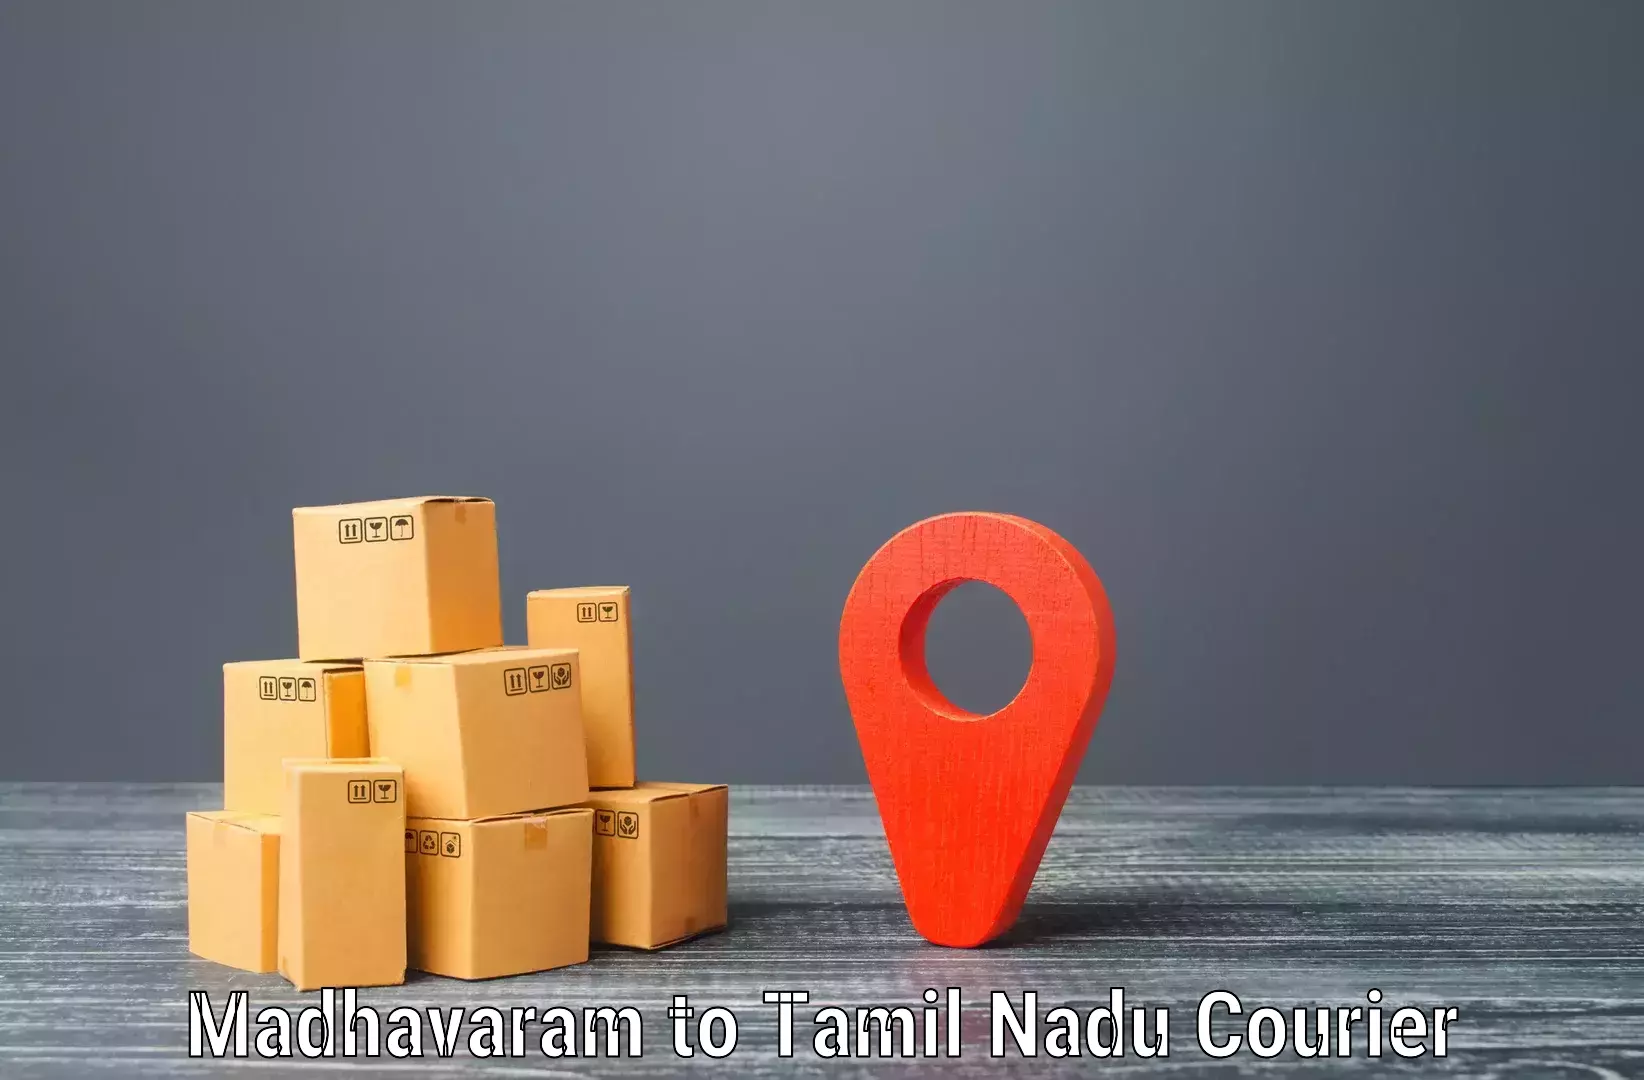 Reliable courier services Madhavaram to Cumbum